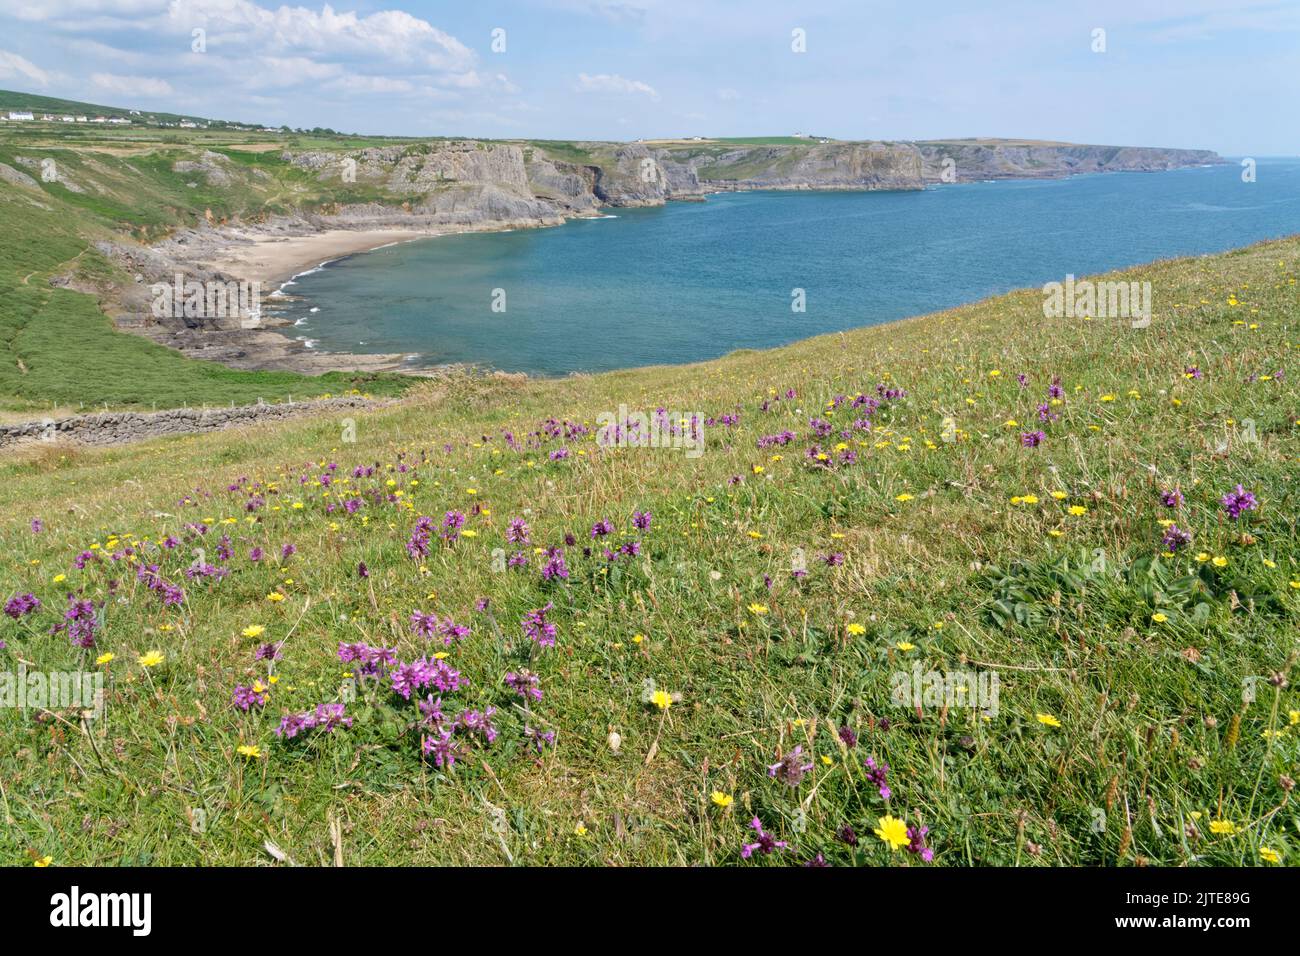 Betonie (Stachys officinalis) blüht in Fülle auf einer Küstenspitze mit Blick auf Fall Bay, Rhossili, The Gower, Wales, Großbritannien, Juli. Stockfoto